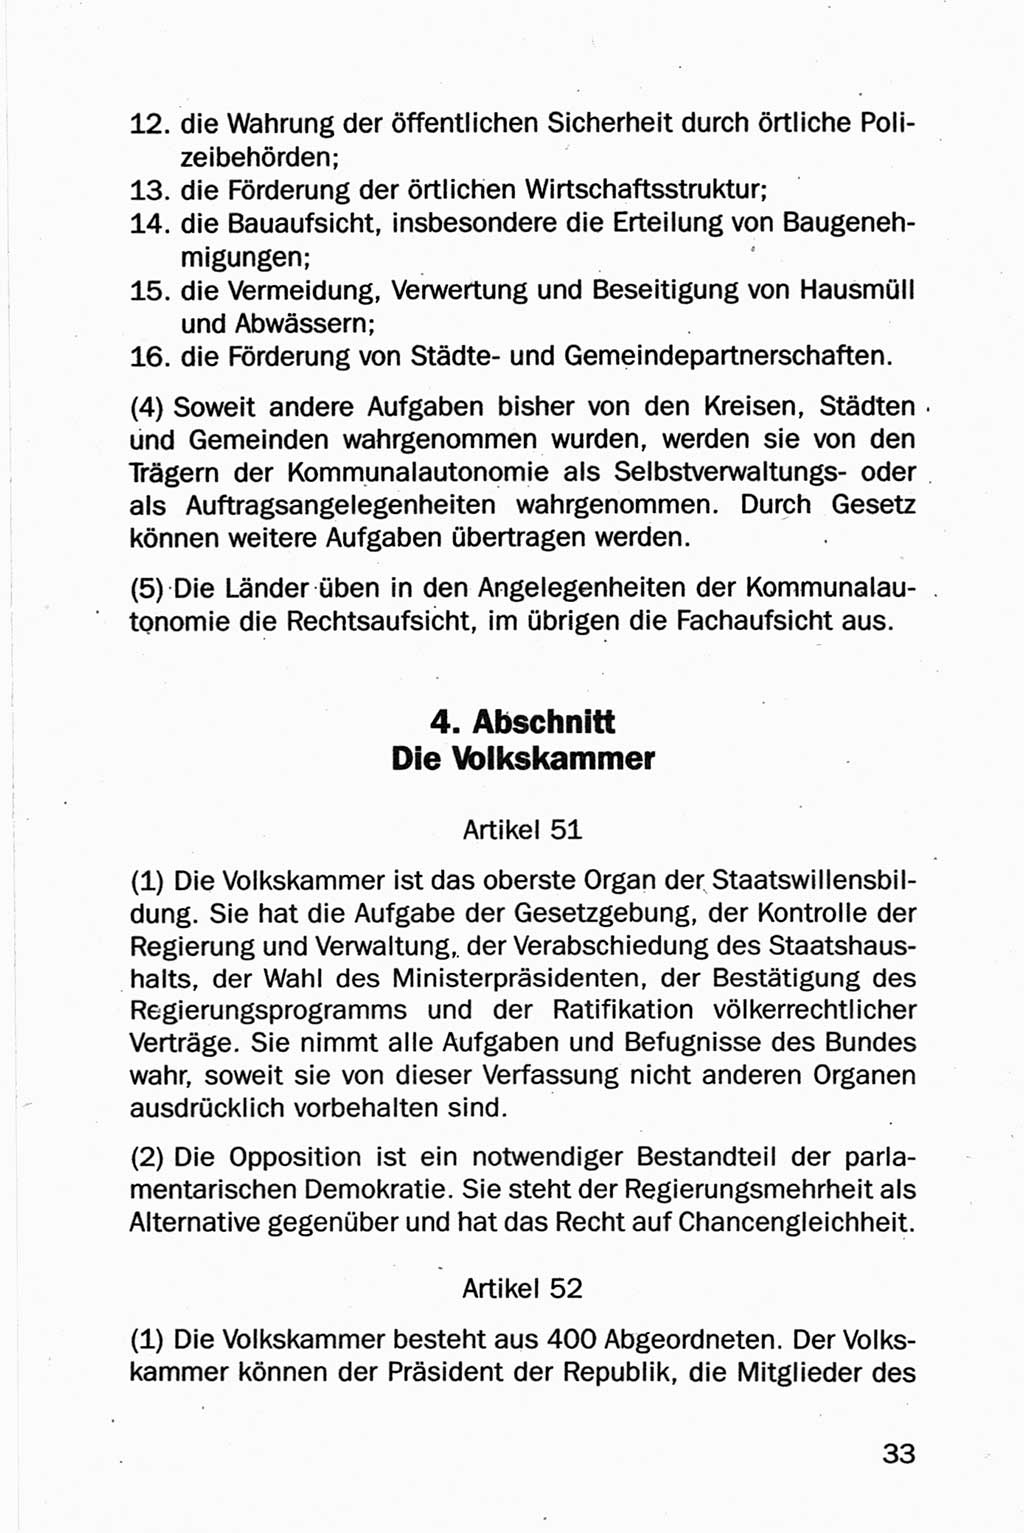 Entwurf Verfassung der Deutschen Demokratischen Republik (DDR), Arbeitsgruppe "Neue Verfassung der DDR" des Runden Tisches, Berlin 1990, Seite 33 (Entw. Verf. DDR 1990, S. 33)